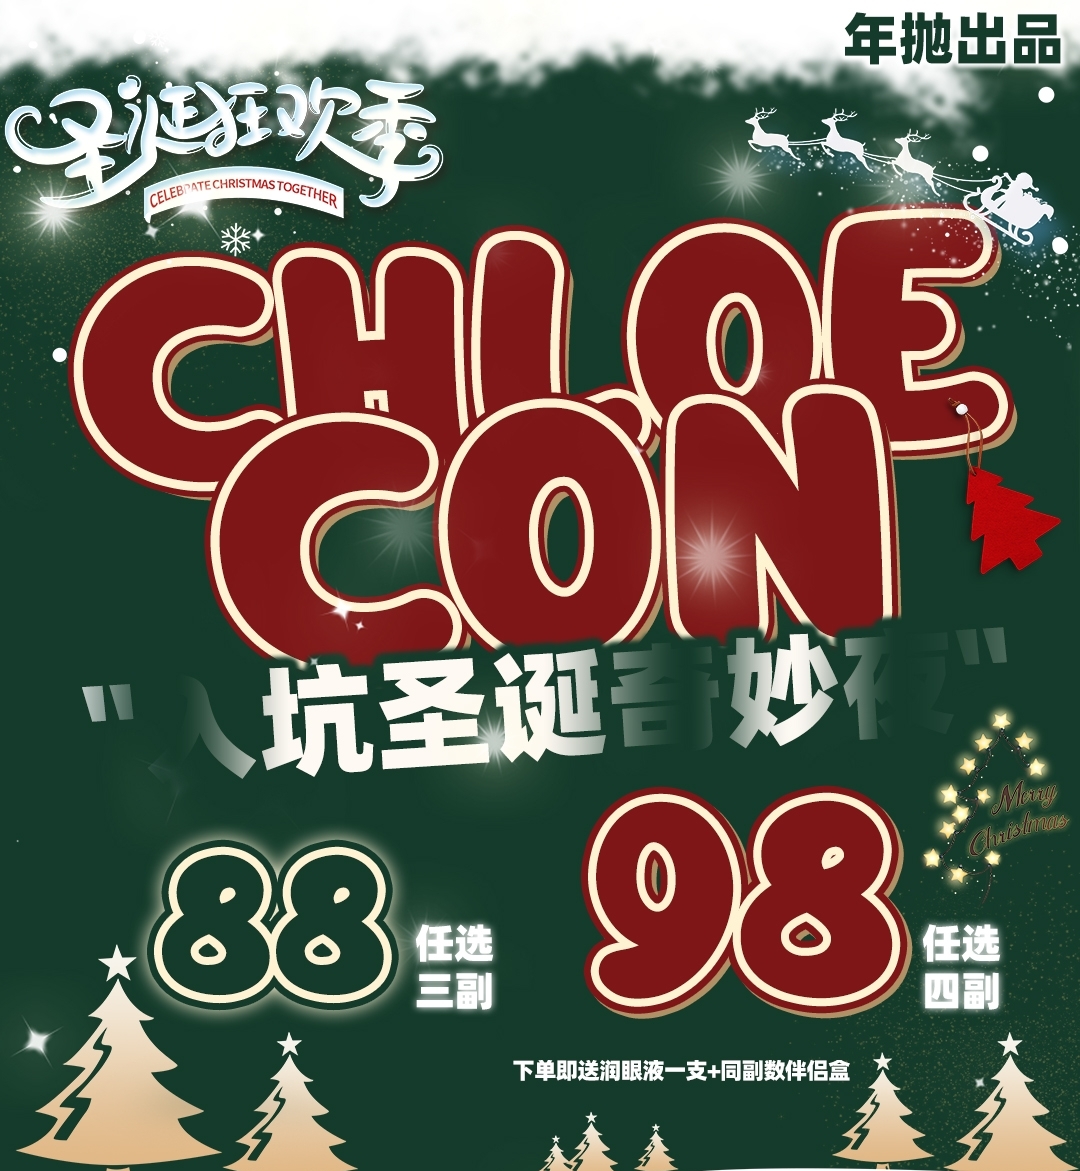 【年抛】Chloecon 圣诞奇妙夜 狂欢季开启 都是甜妹本命绝美花色